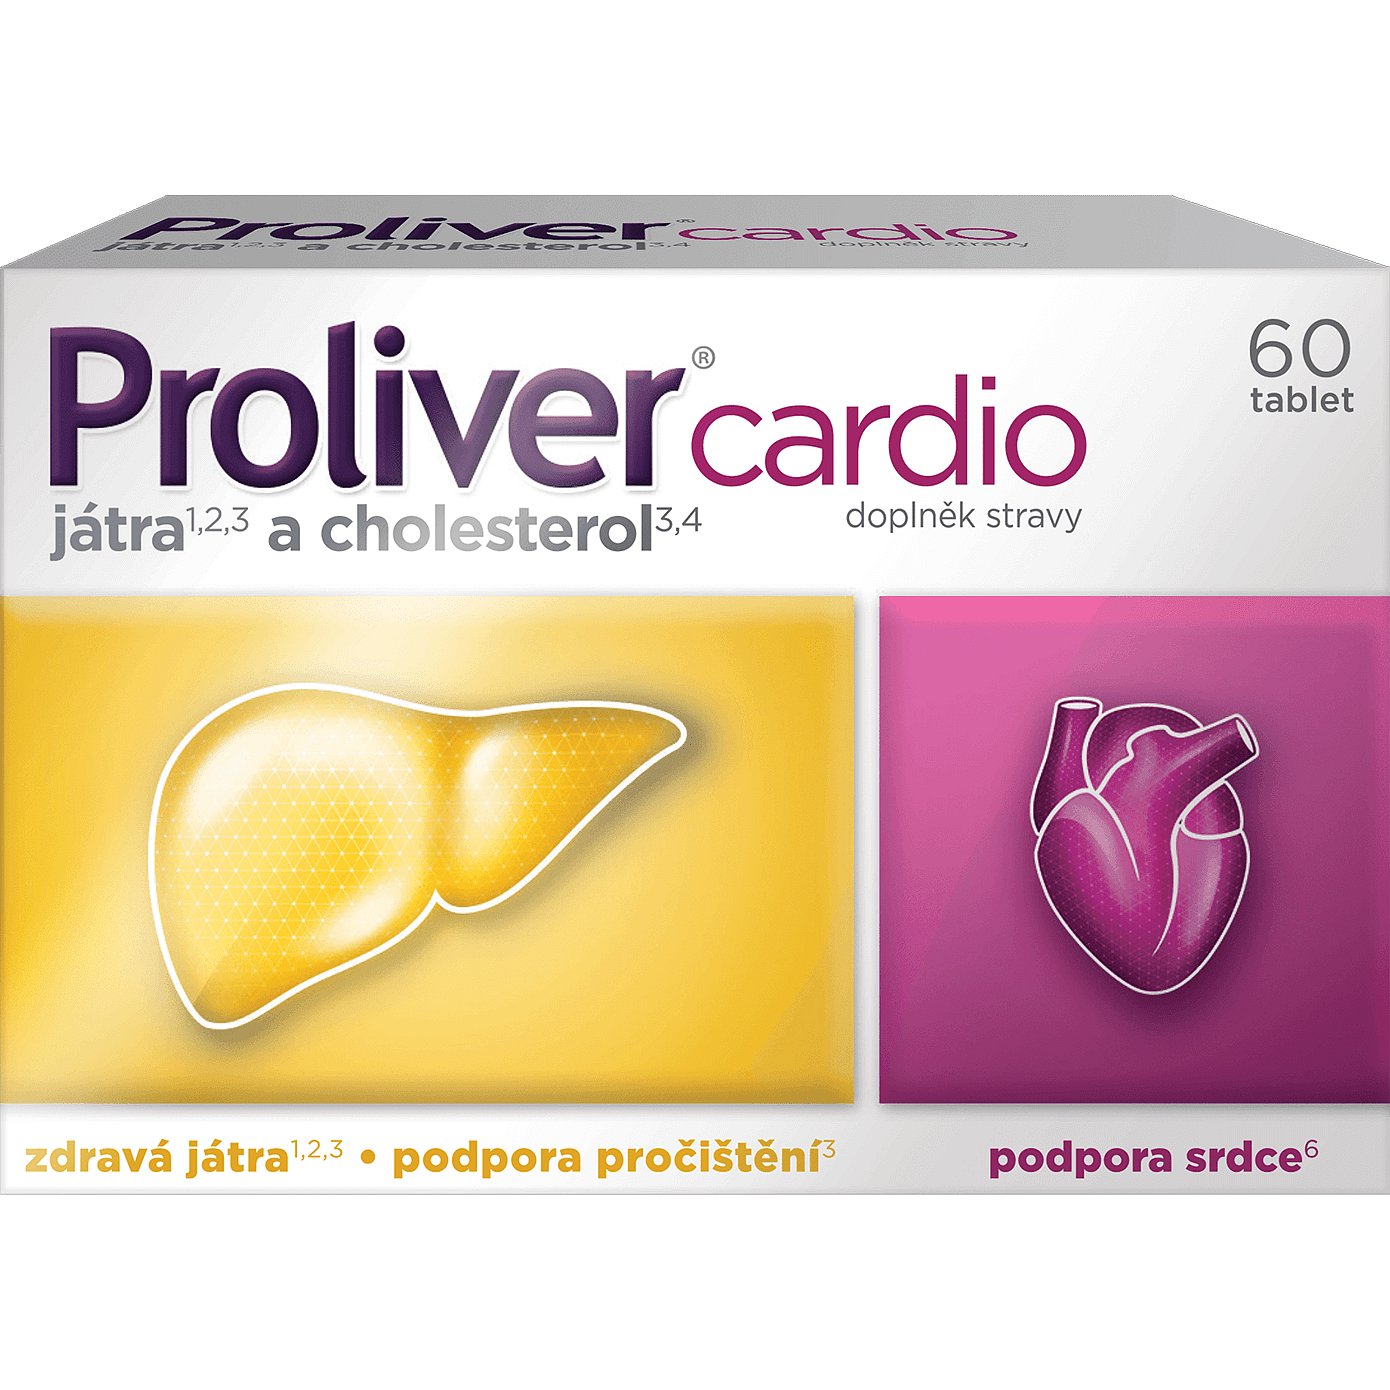 Proliver cardio 60 tablet